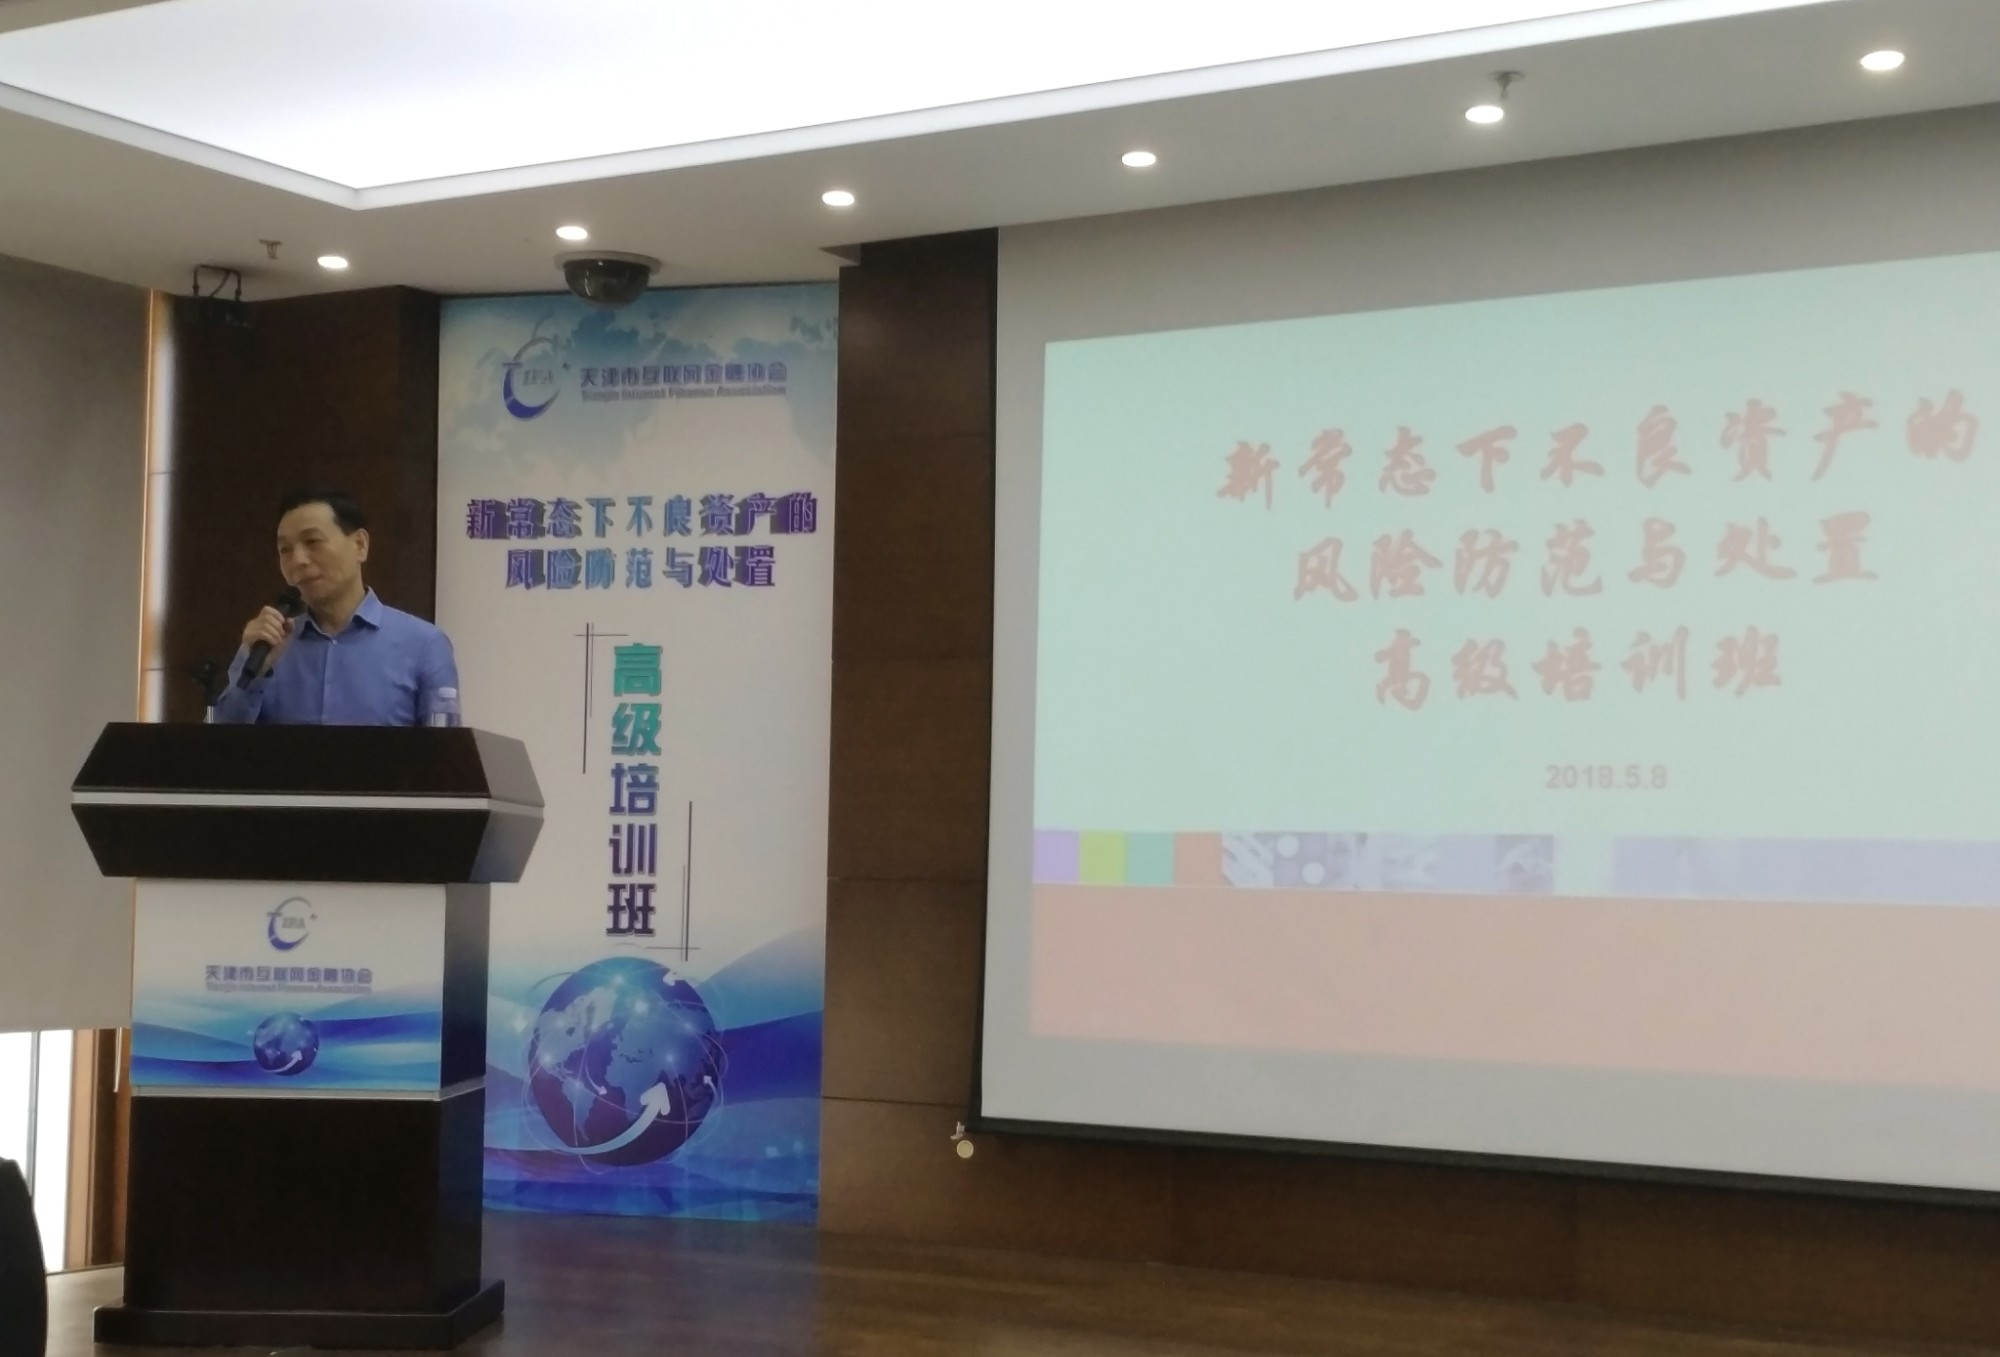 天津市互联网金融协会举办“新常态下不良资产的风险防范与处置”高级培训班